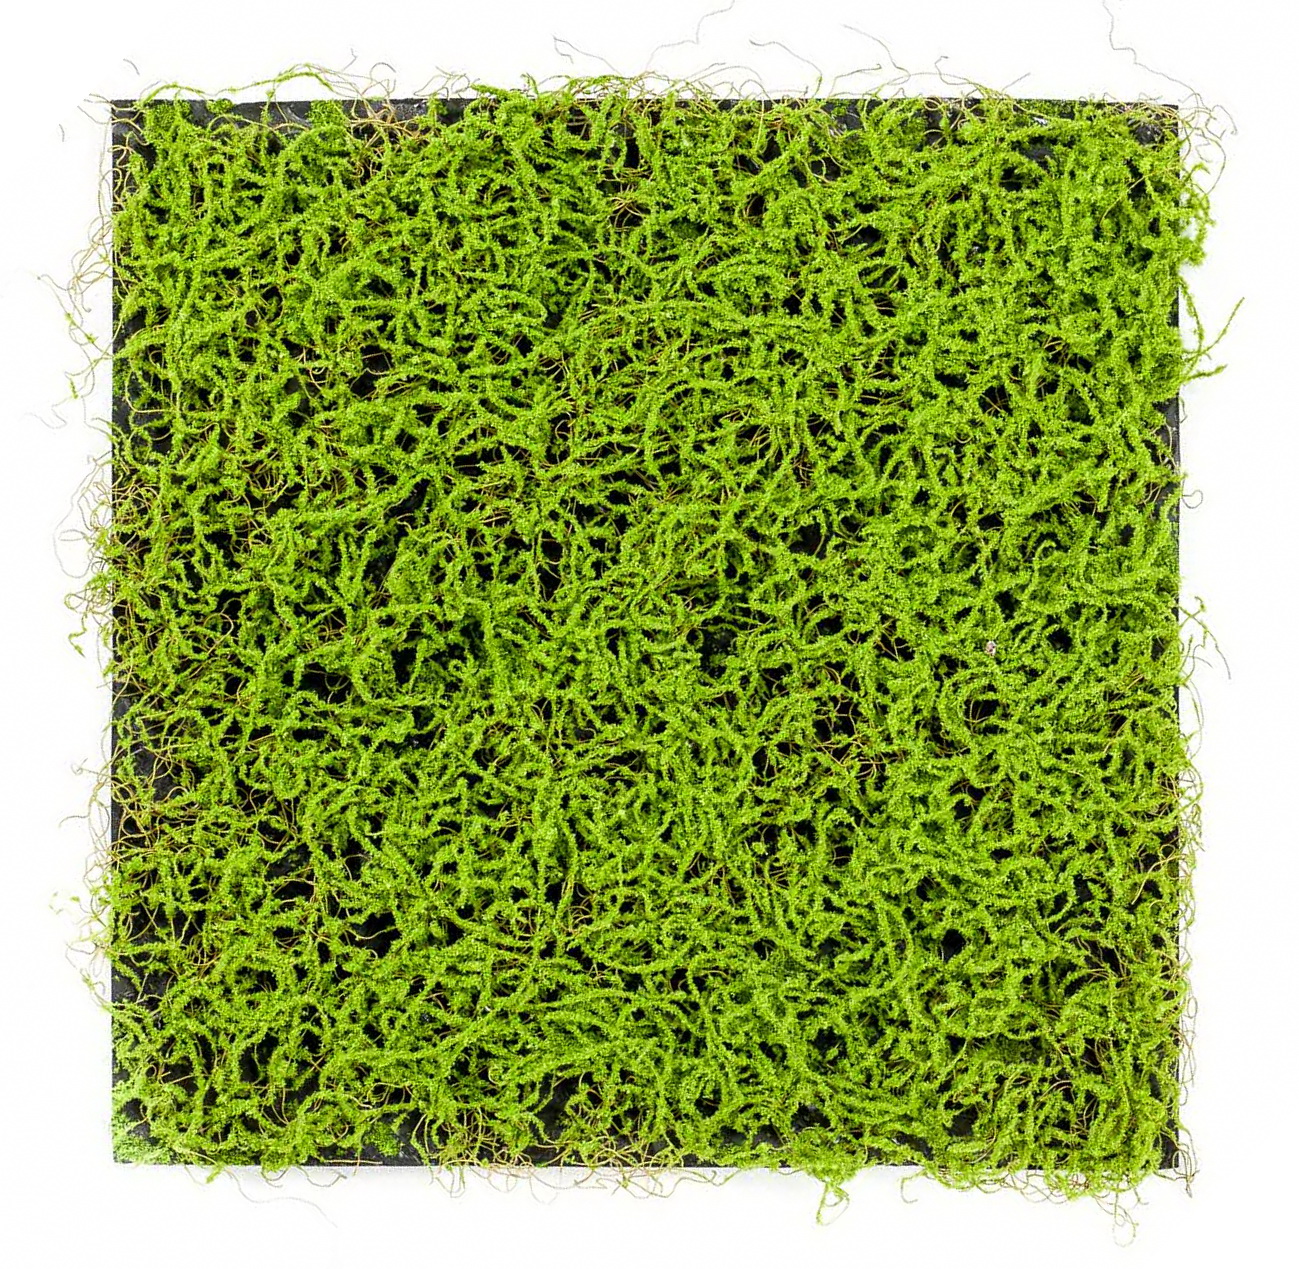 Umělá živá zelená stěna mechová tráva, 50 x 50cm